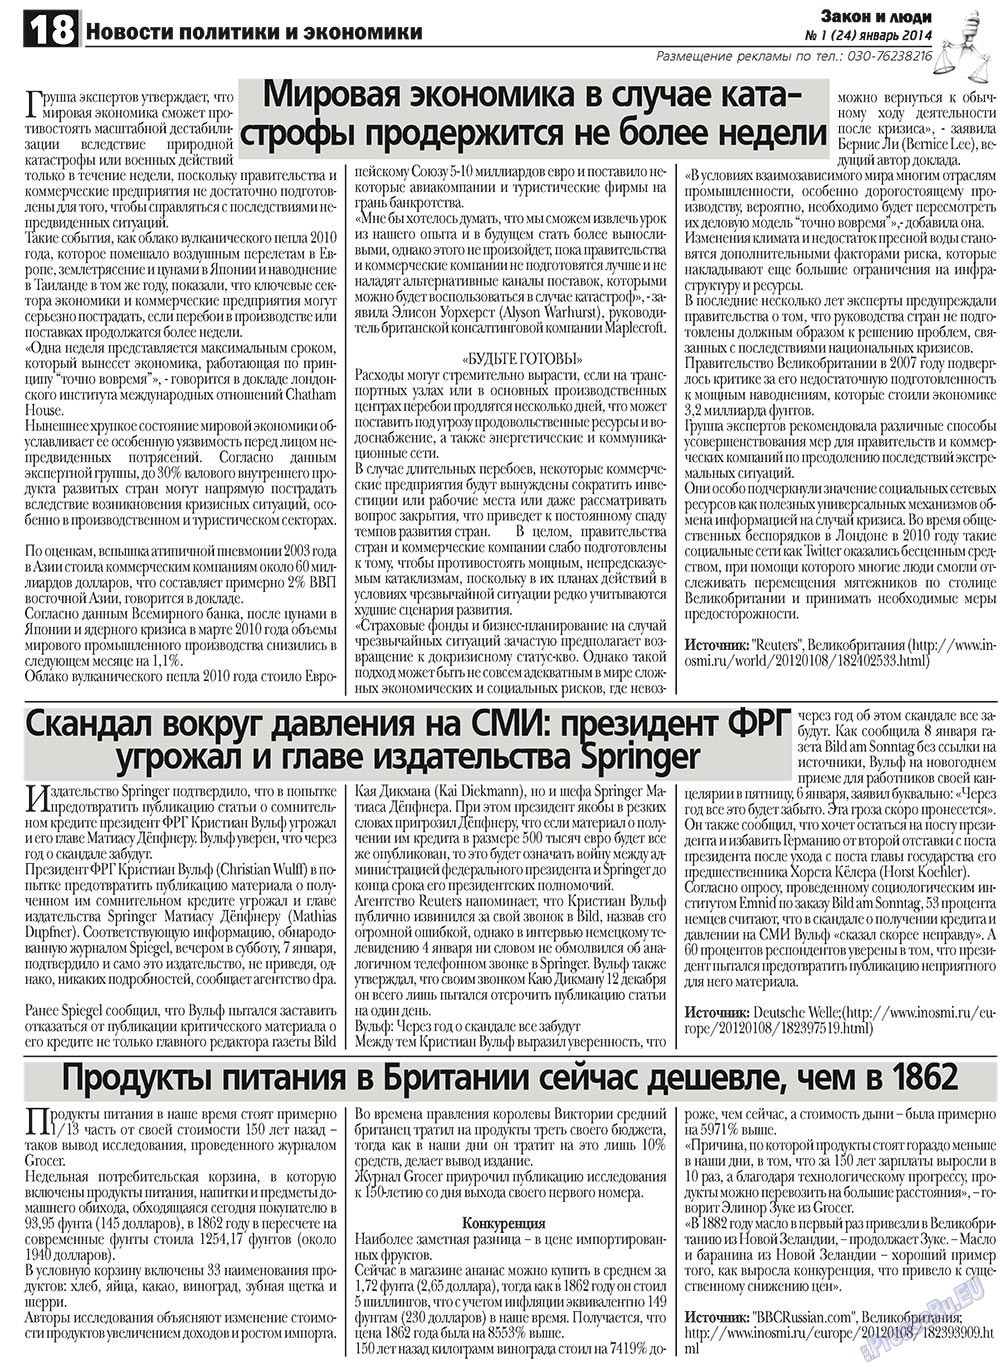 Закон и люди, газета. 2012 №1 стр.18